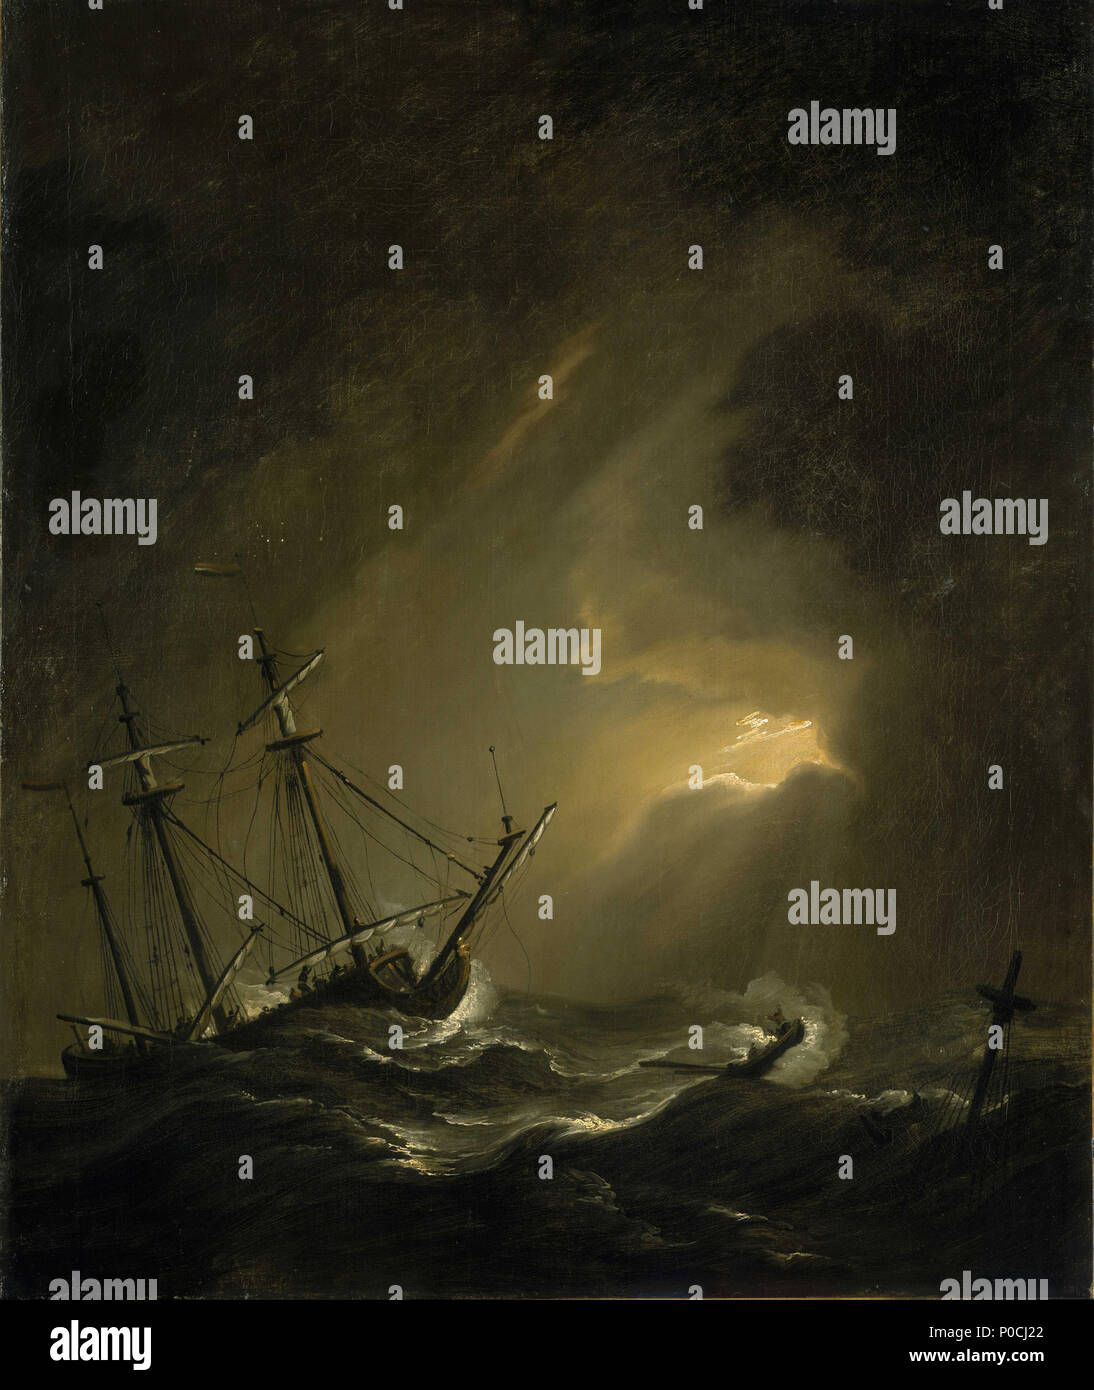 . Anglais : un petit navire néerlandais face à une tempête peinture à l'huile . Fin du 17ème siècle - début du 18e siècle. Willem Van de Velde le jeune 206, un petit navire néerlandais face à une tempête BHC RMG0898 Banque D'Images